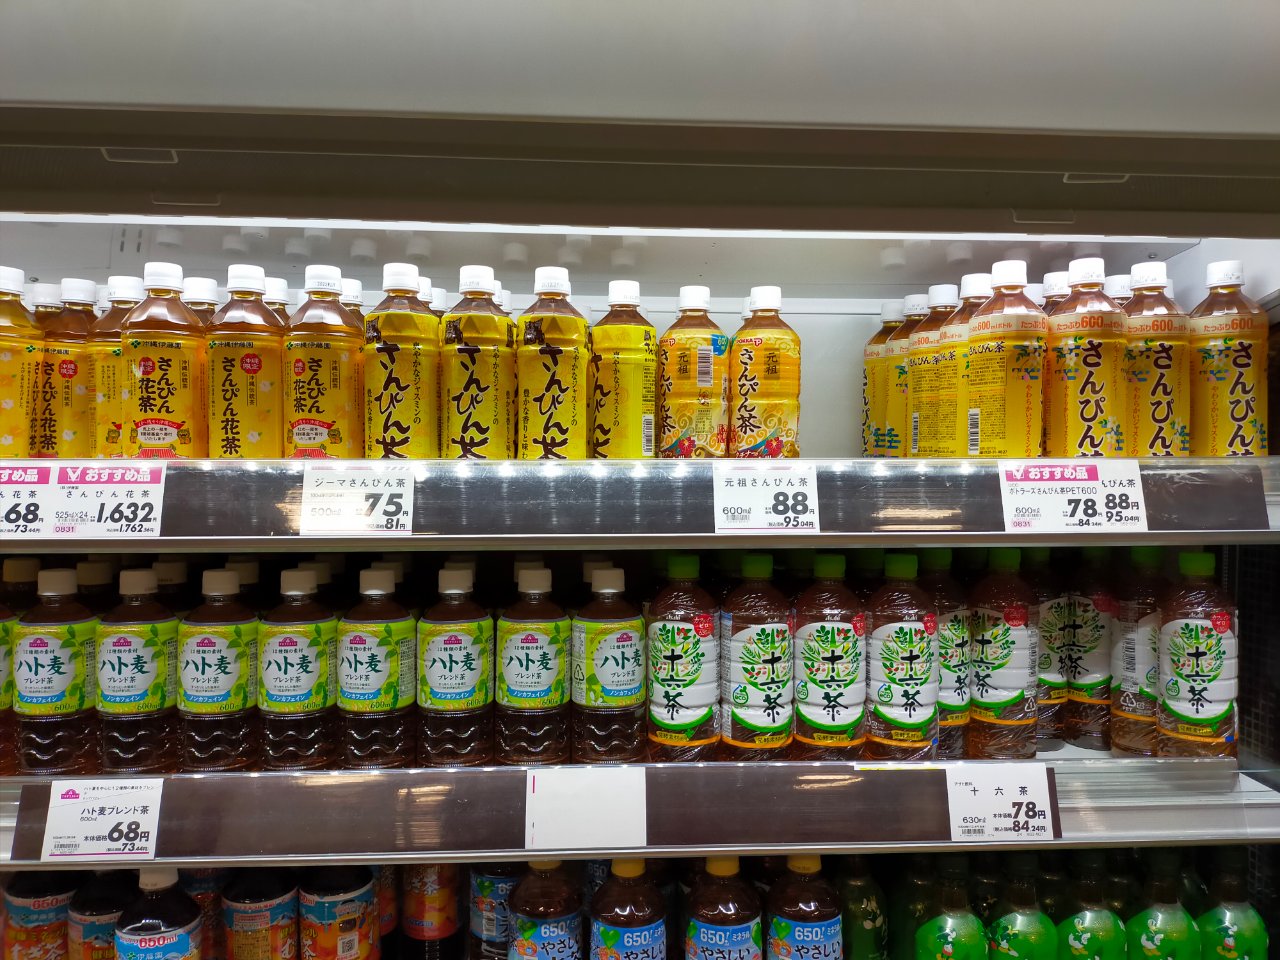 沖縄那覇のおみやげ格安購入には「イオン小禄店」が超絶便利。空港間近、行き方・商品を写真で紹介。ばらまきはスーパーで買うのが安い。 - nanatabi